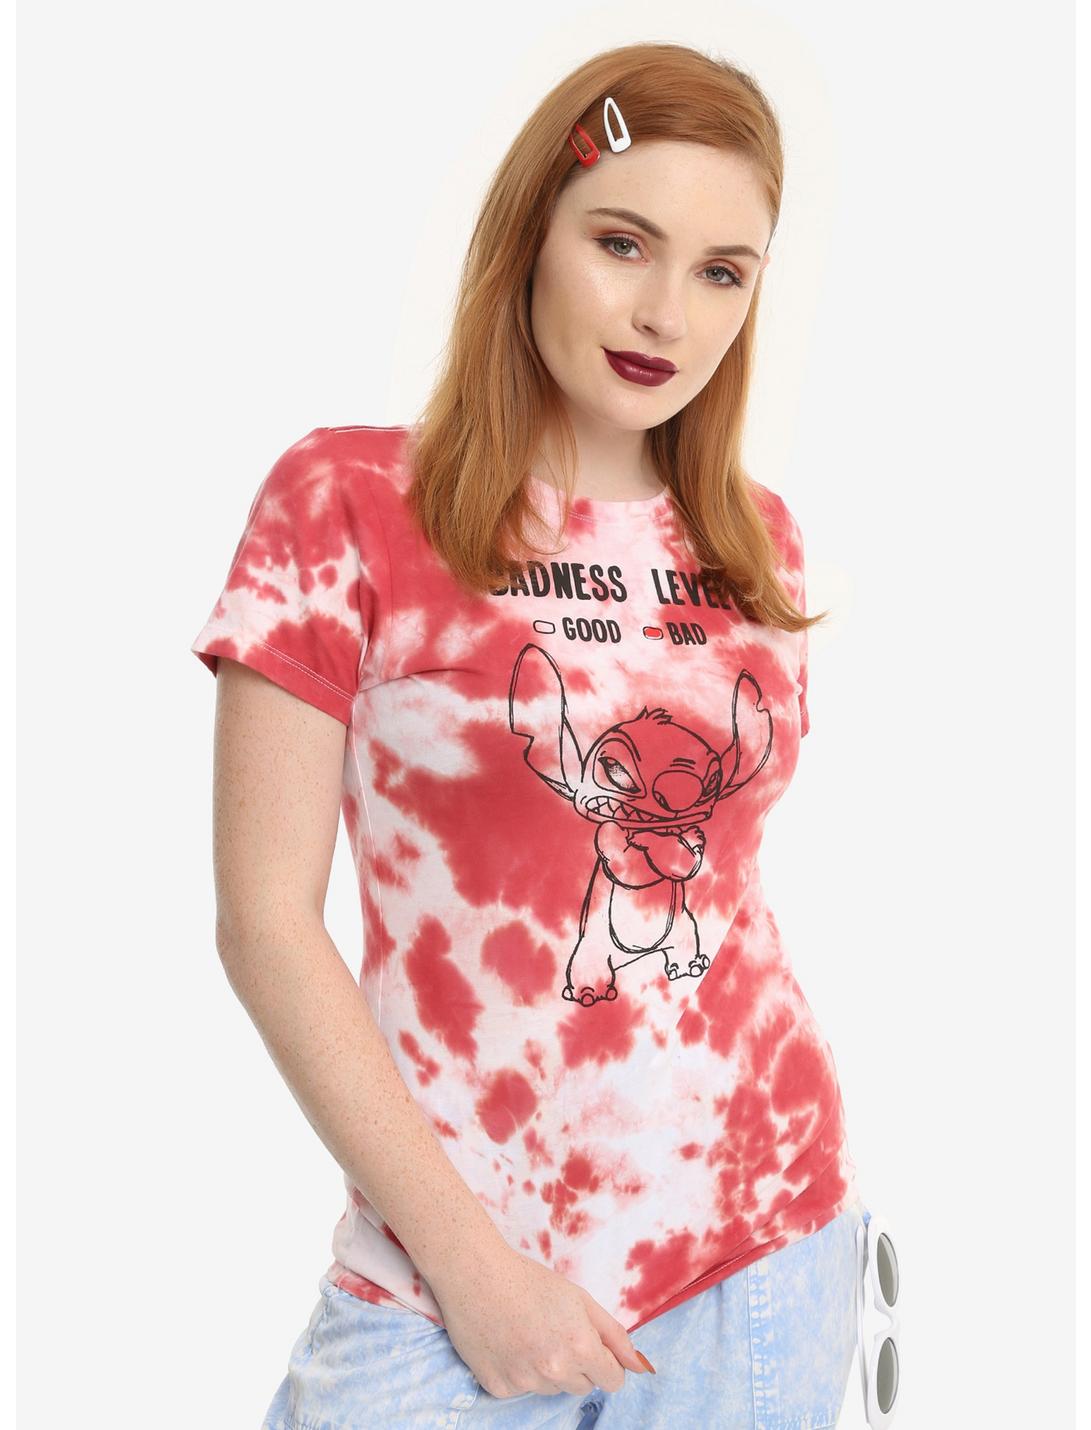 Disney Lilo & Stitch Badness Level Tie Dye Girls T-Shirt, TIE DYE, hi-res